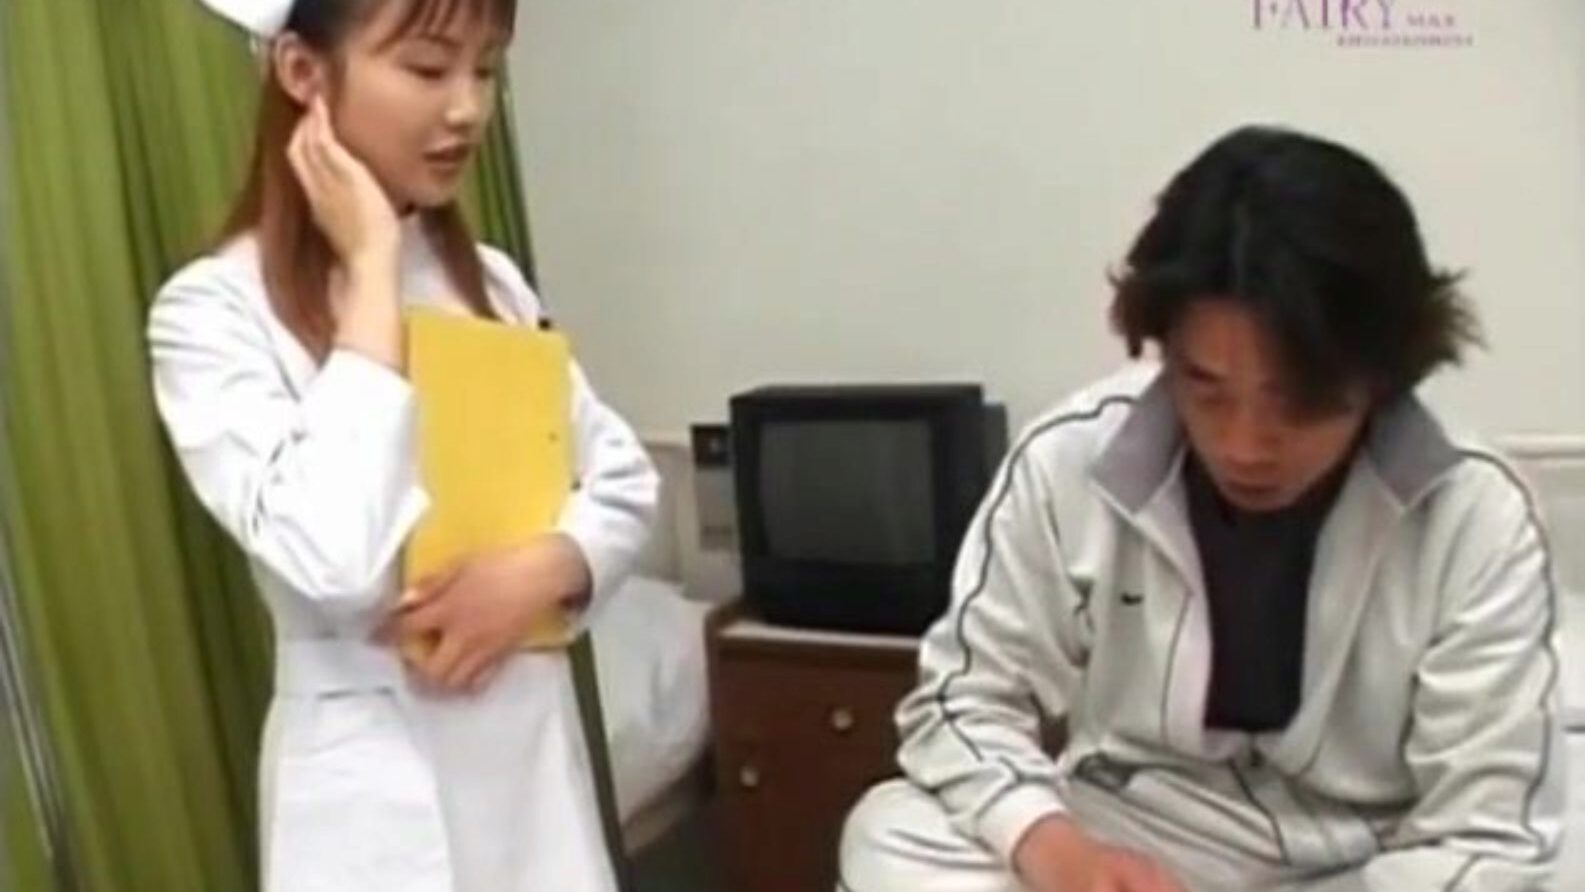 rina usui infirmière salope prend le patient schlong dans le trou du visage et - plus sur hotajp com